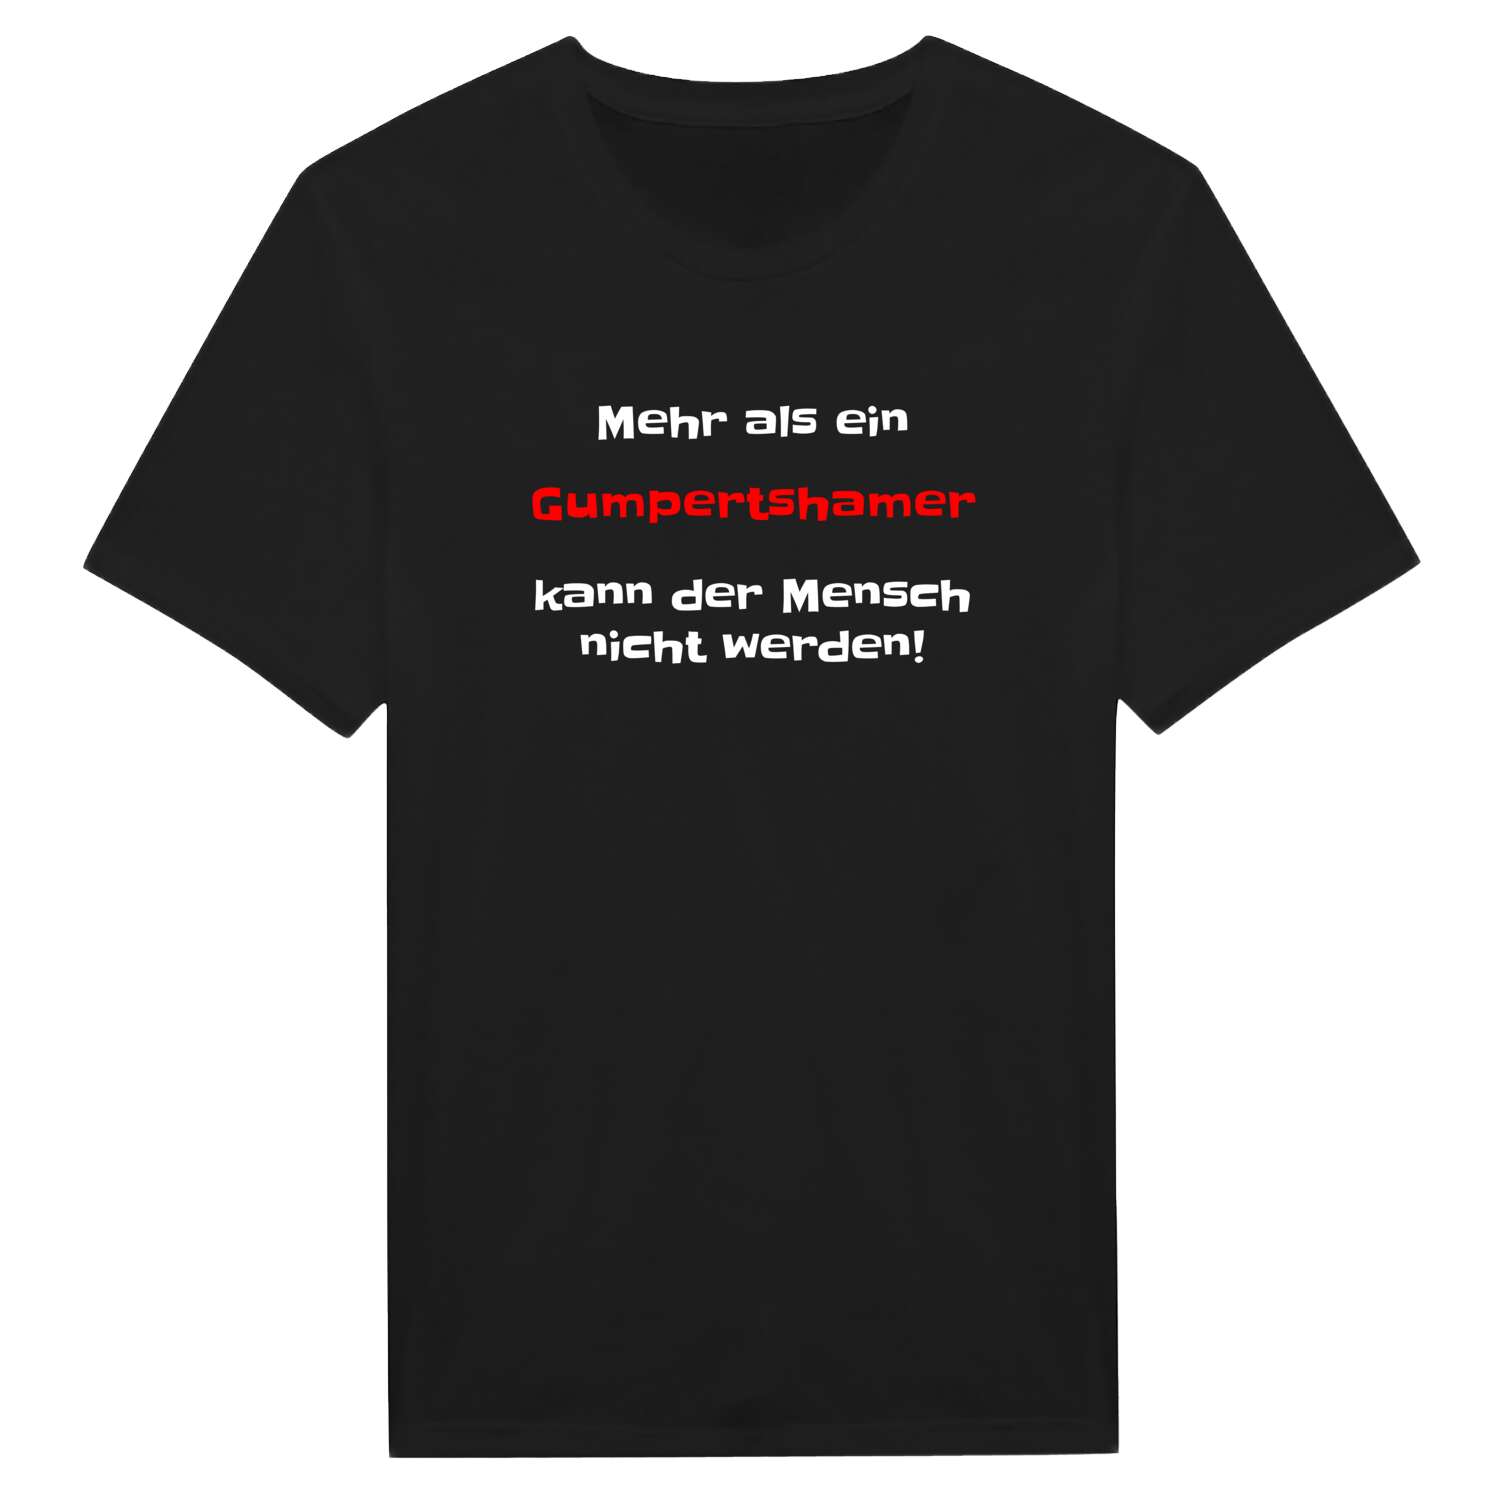 Gumpertsham T-Shirt »Mehr als ein«